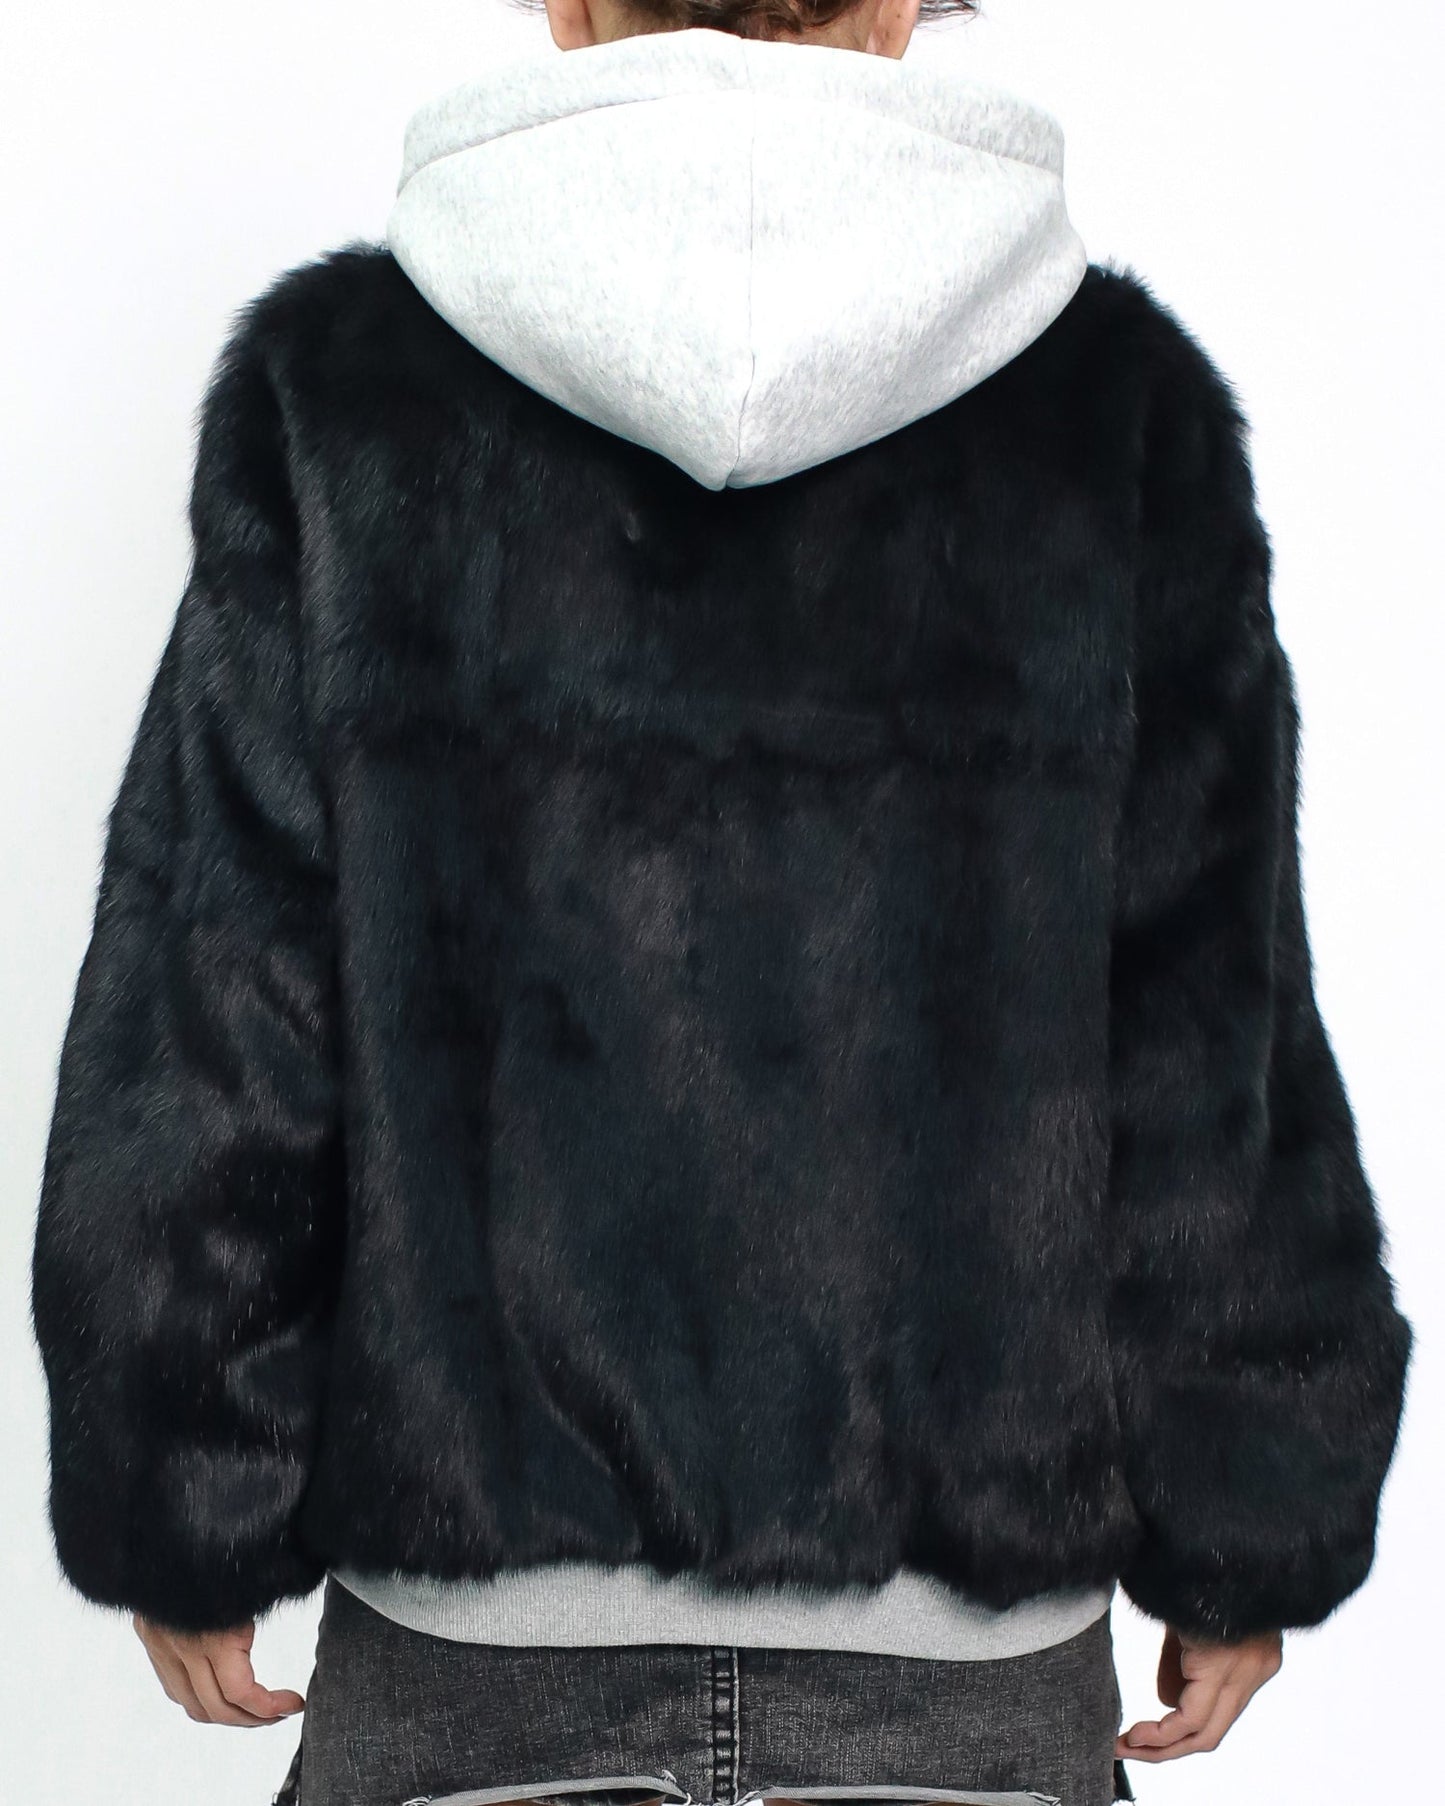 grey & black furry hoodie sweatshirt quilted jacket *pre-order*